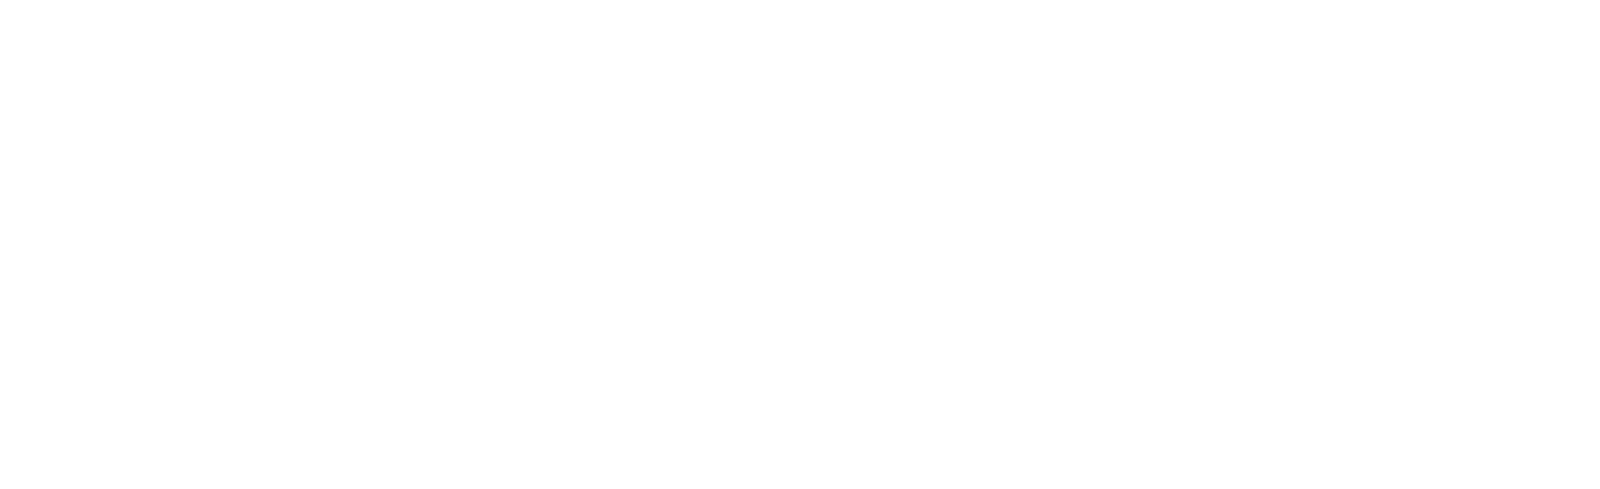 351-association-white-logo